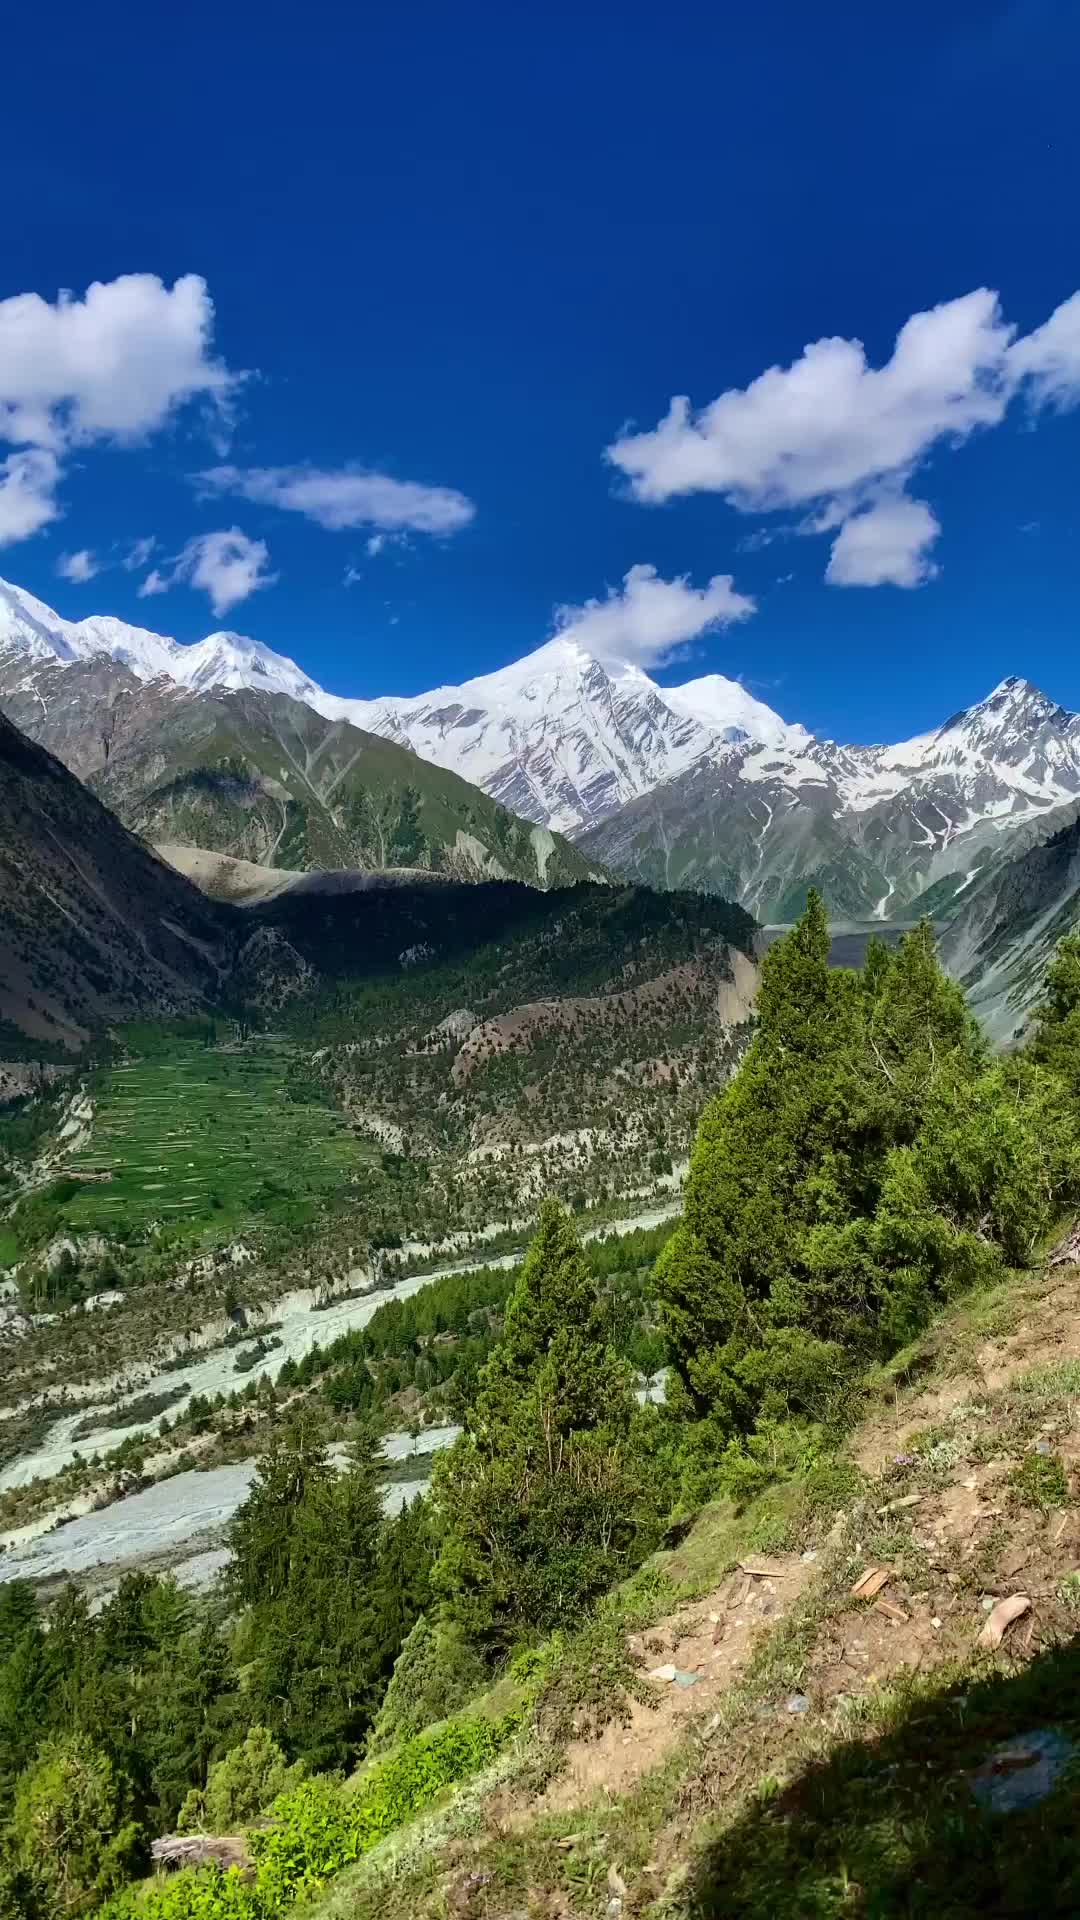 Stunning Views of Bagrote Valley in Karakoram National Park